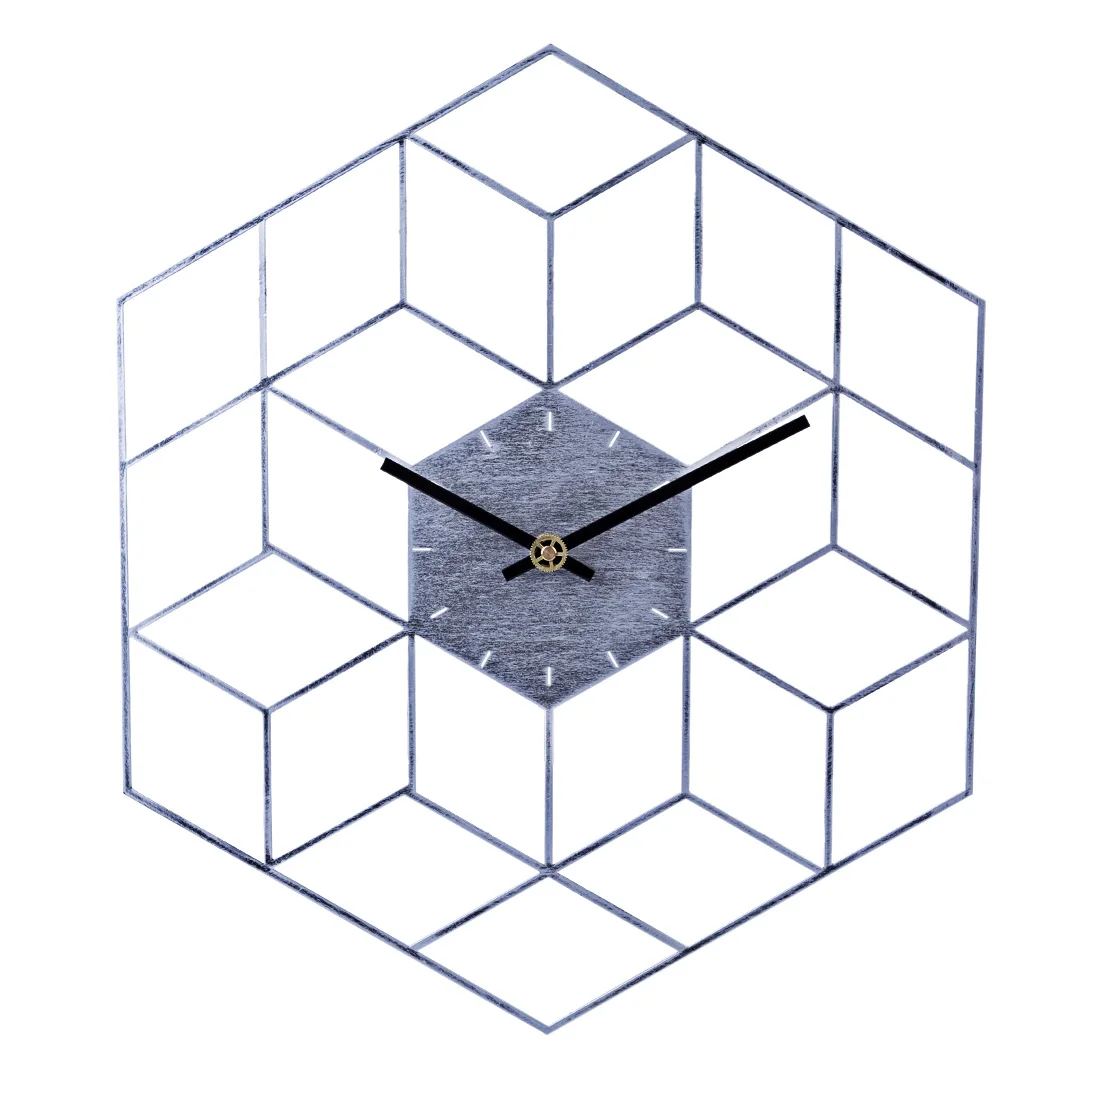 Online 35X40 cm Kreative Eisen Cube Wanduhr Timer Uhr Batterie Betrieben Schweigen Wand Uhren Wohnkultur Dekoration  skala Goldene